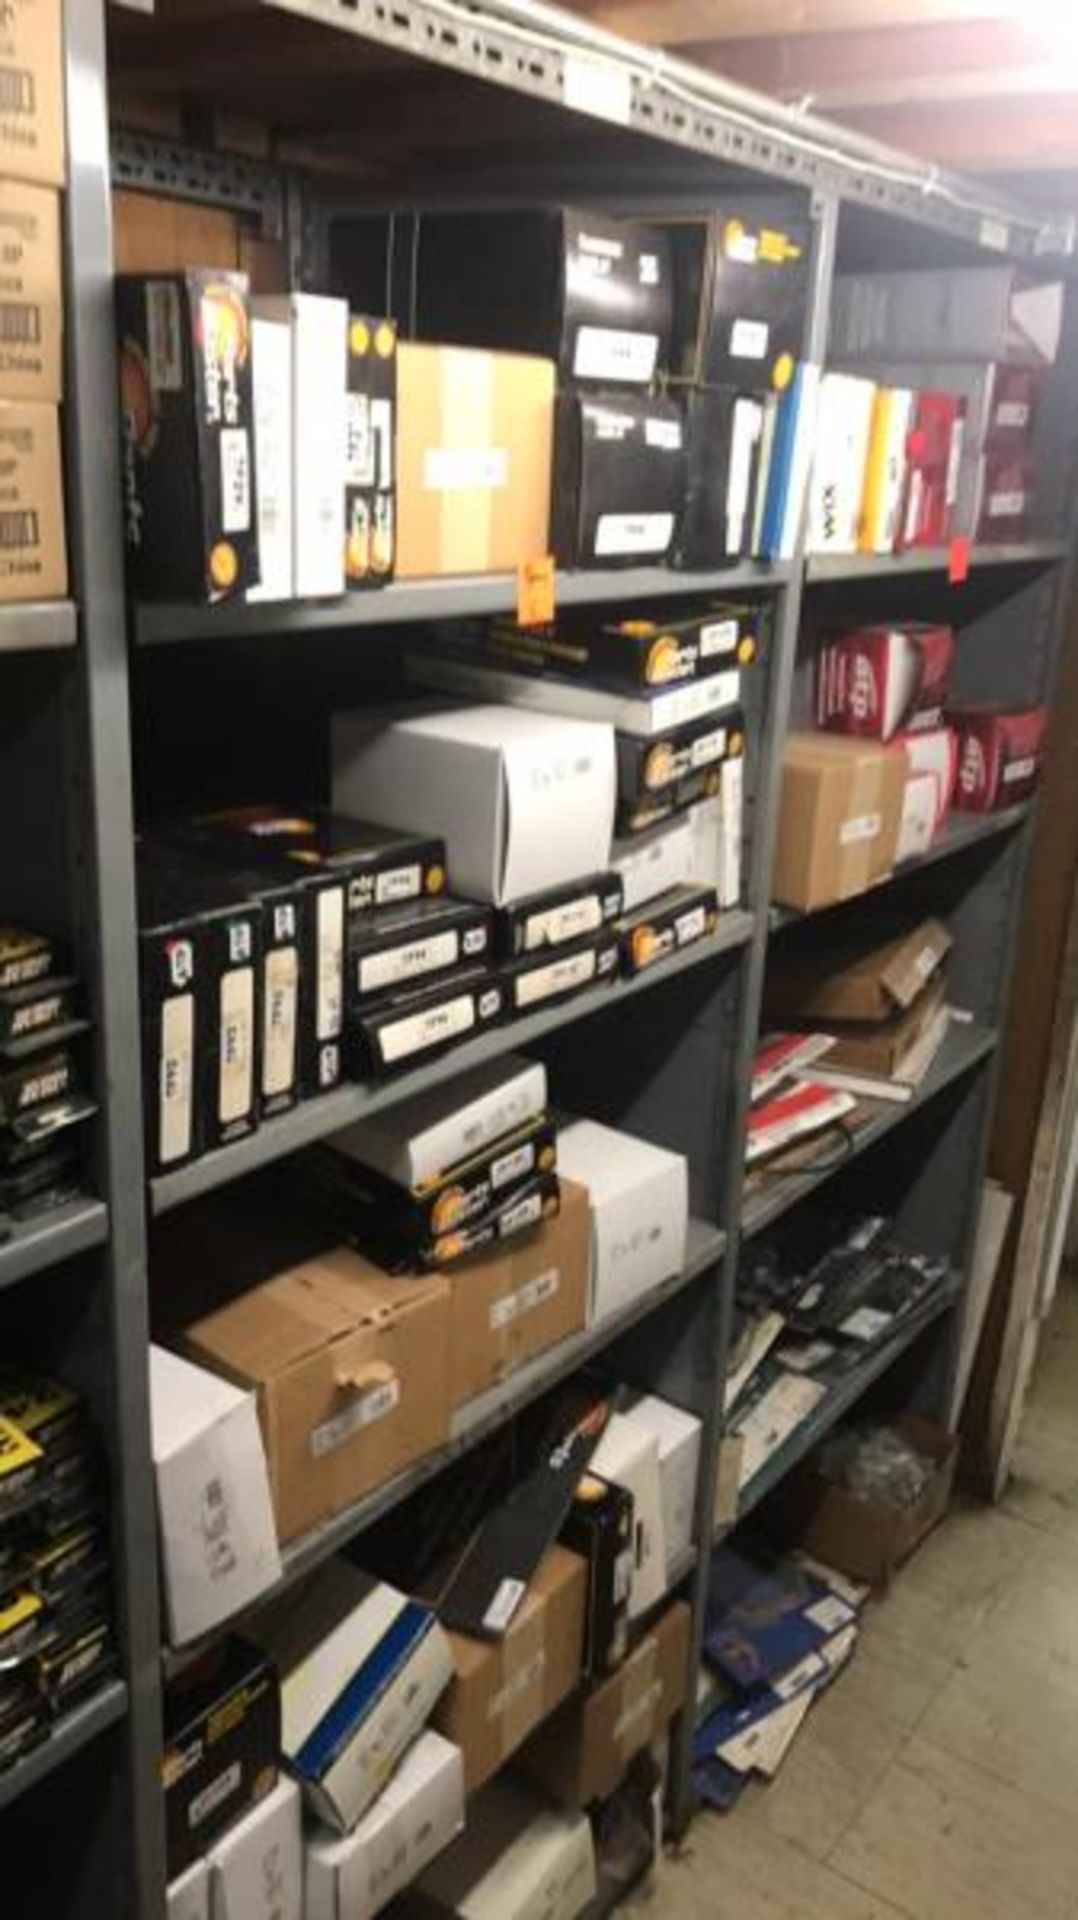 (5) Shelves of Trans Kits